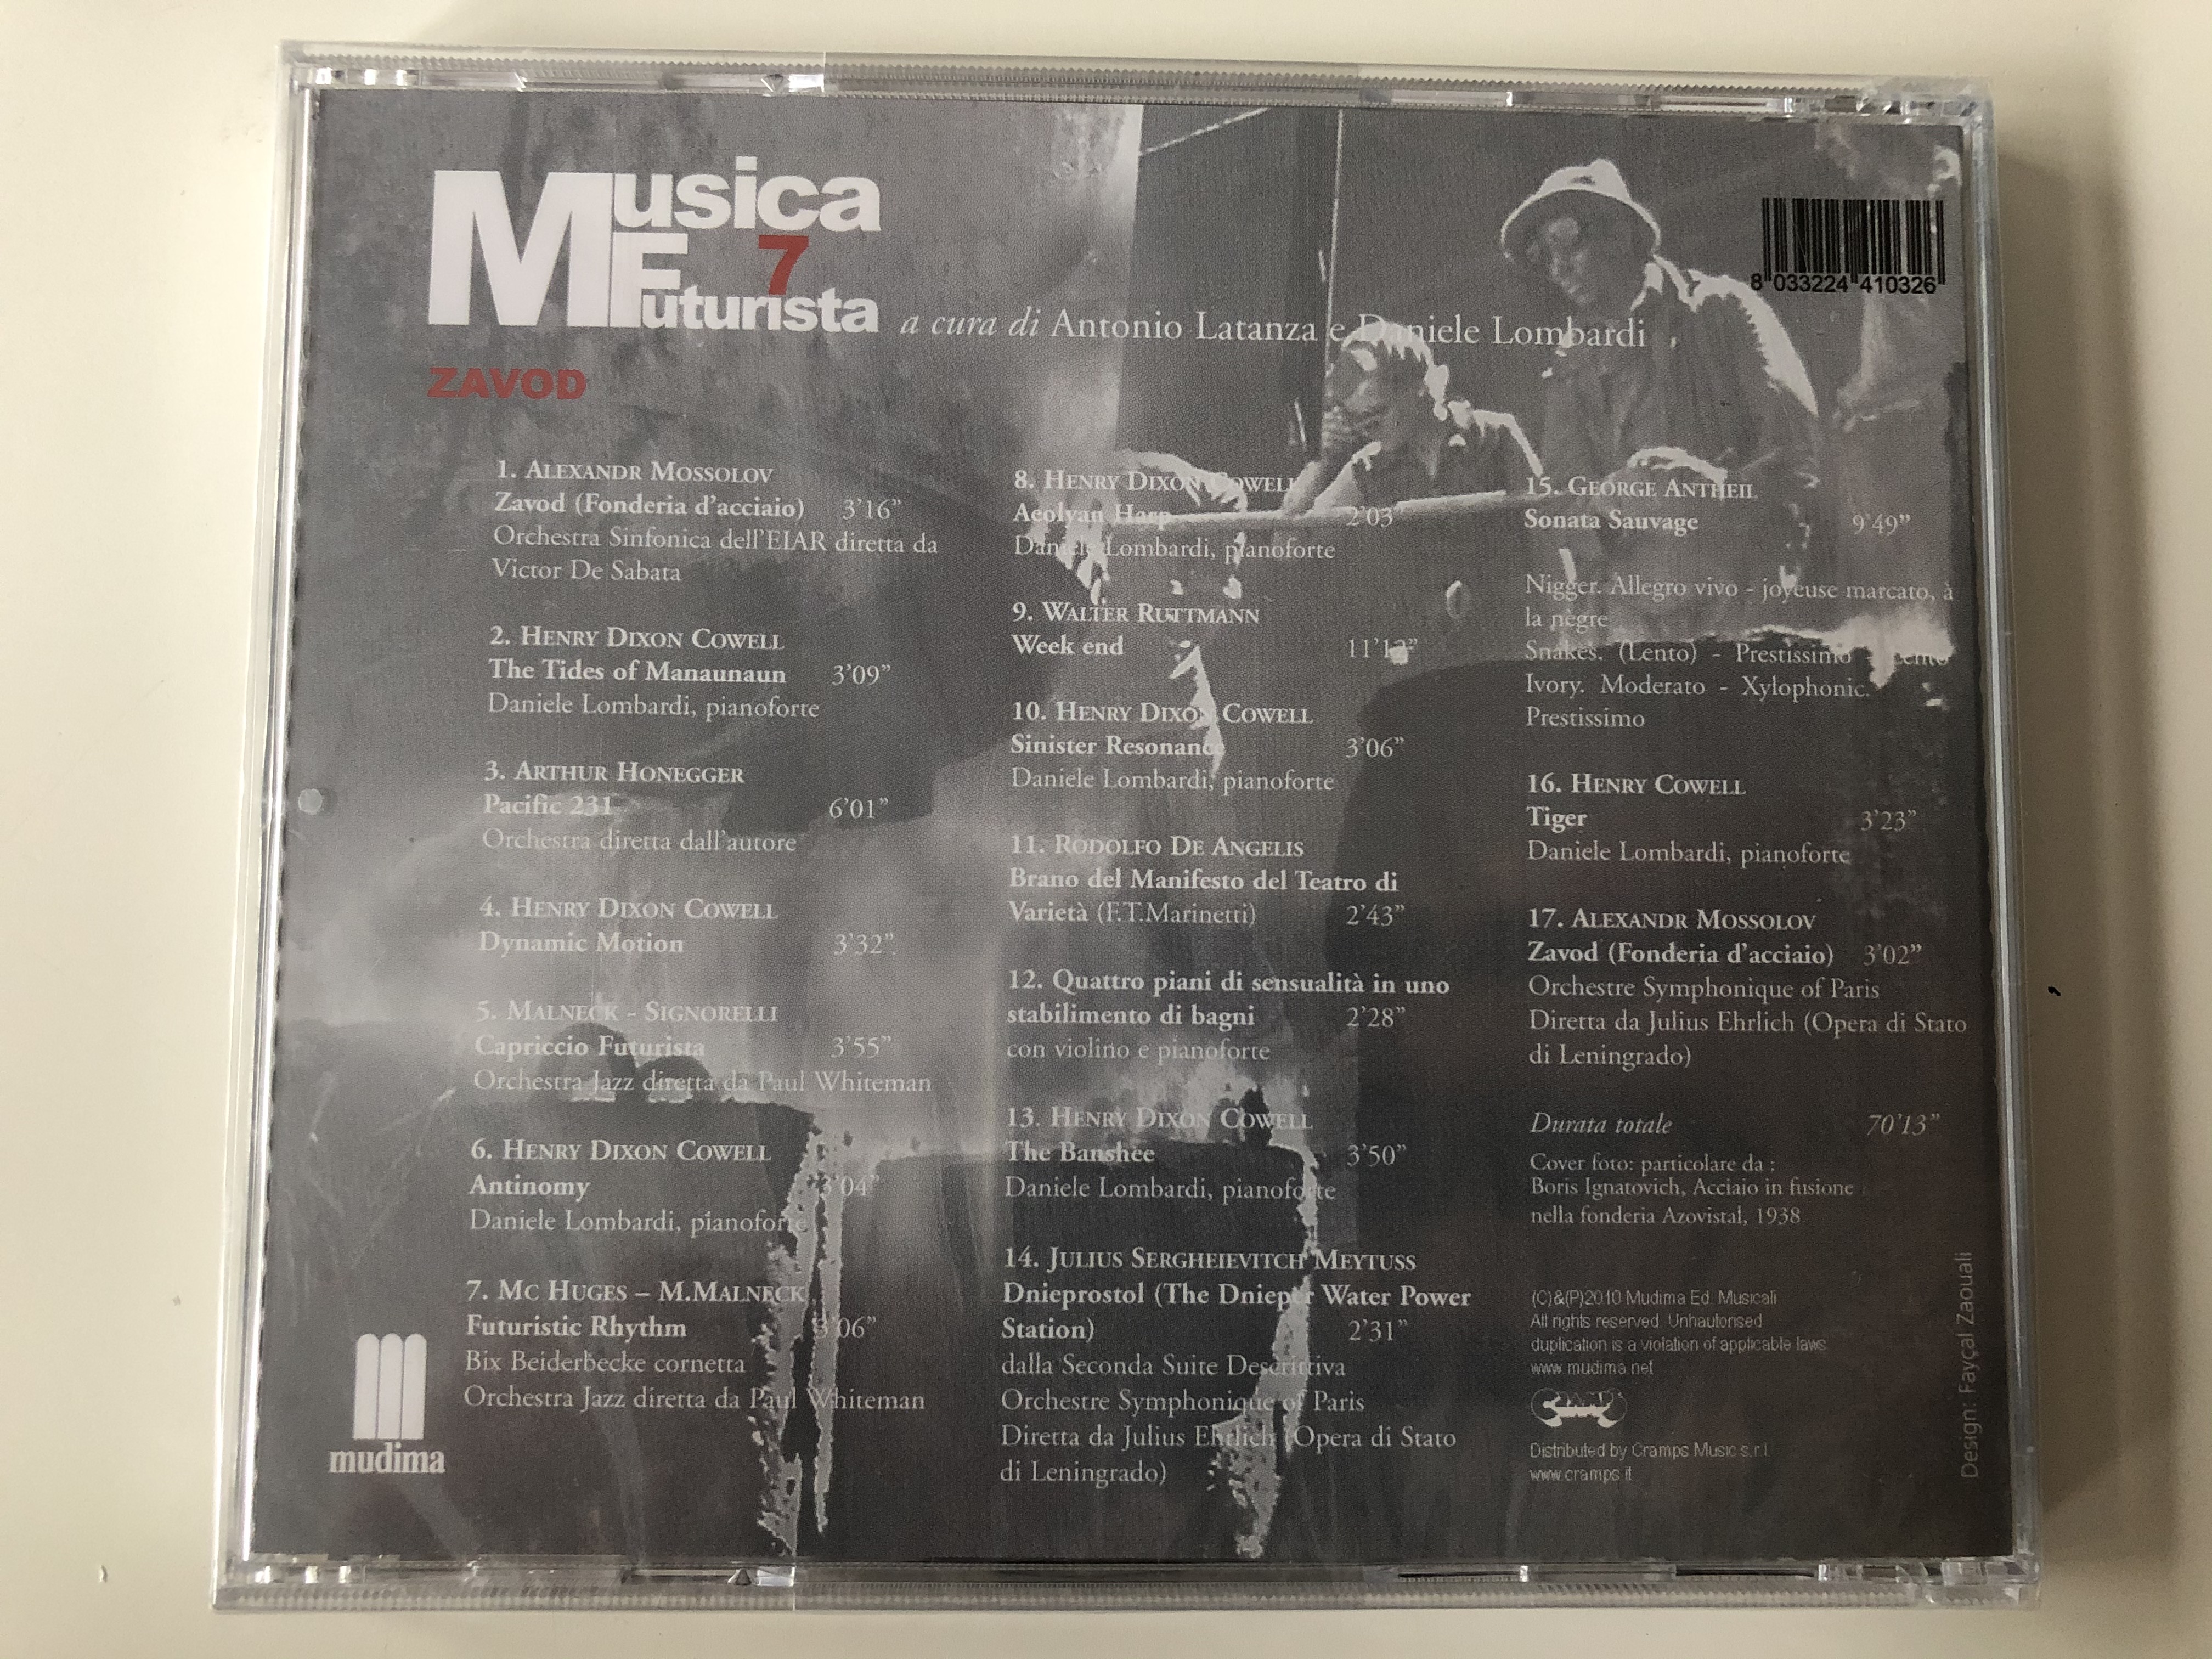 musica-futurista-7-a-cura-di-antonio-latanza-daniele-lombardi-zavod-mudima-ed.-musicali-audio-cd-2010-8033224410326-2-.jpg